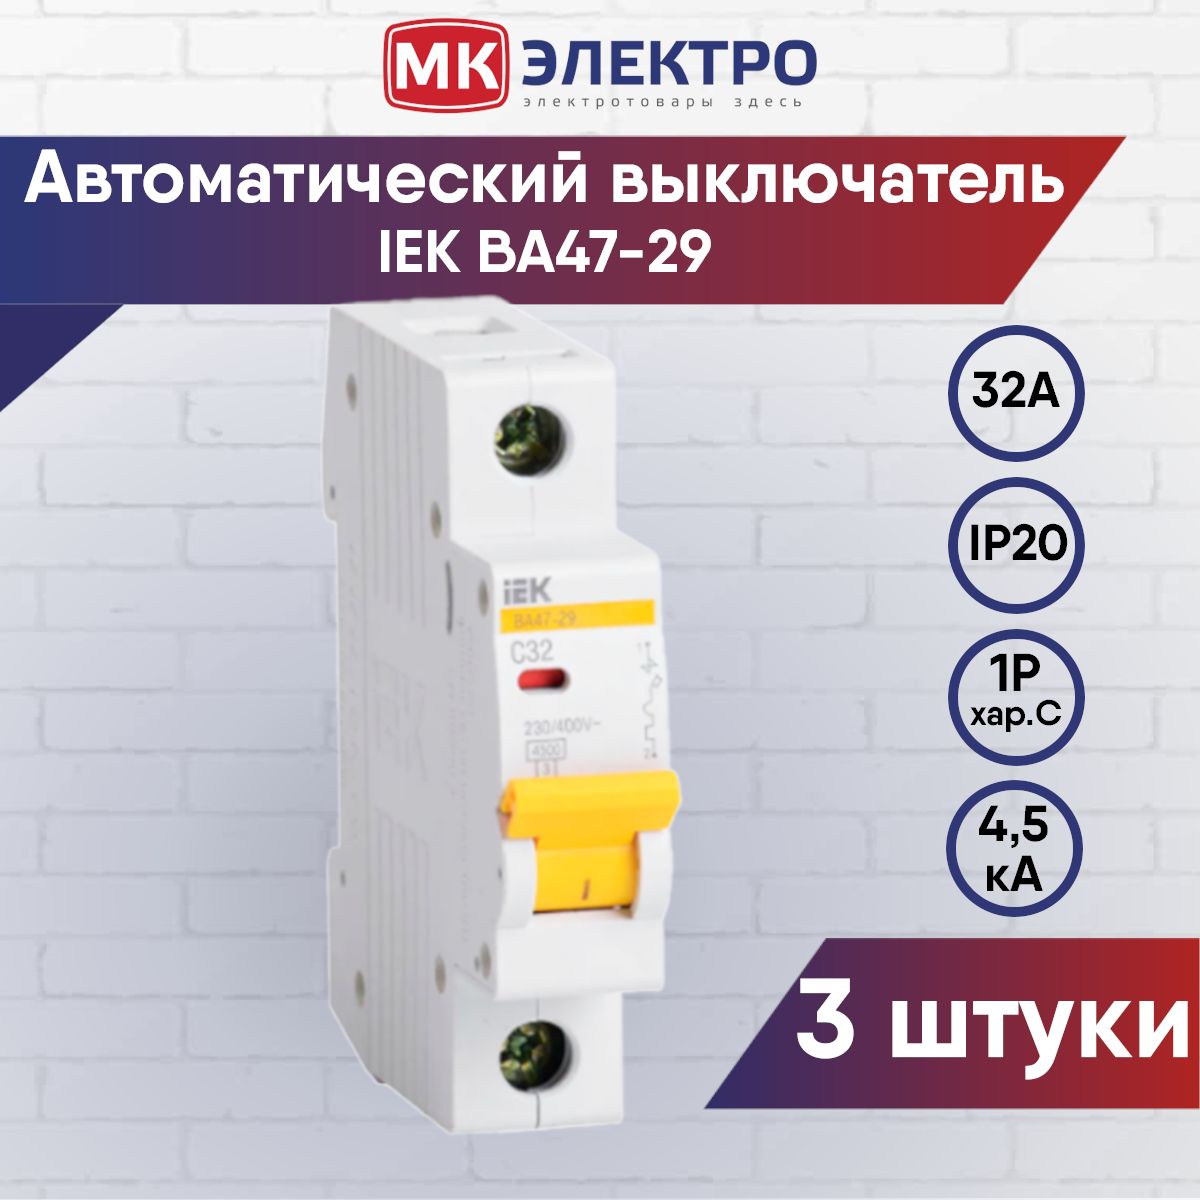 Автоматические выключатели iek каталог. Выключатель IEK для вентилятора. Автомат IEK Home c10 30ma. Автомат ИЭК инструкция.